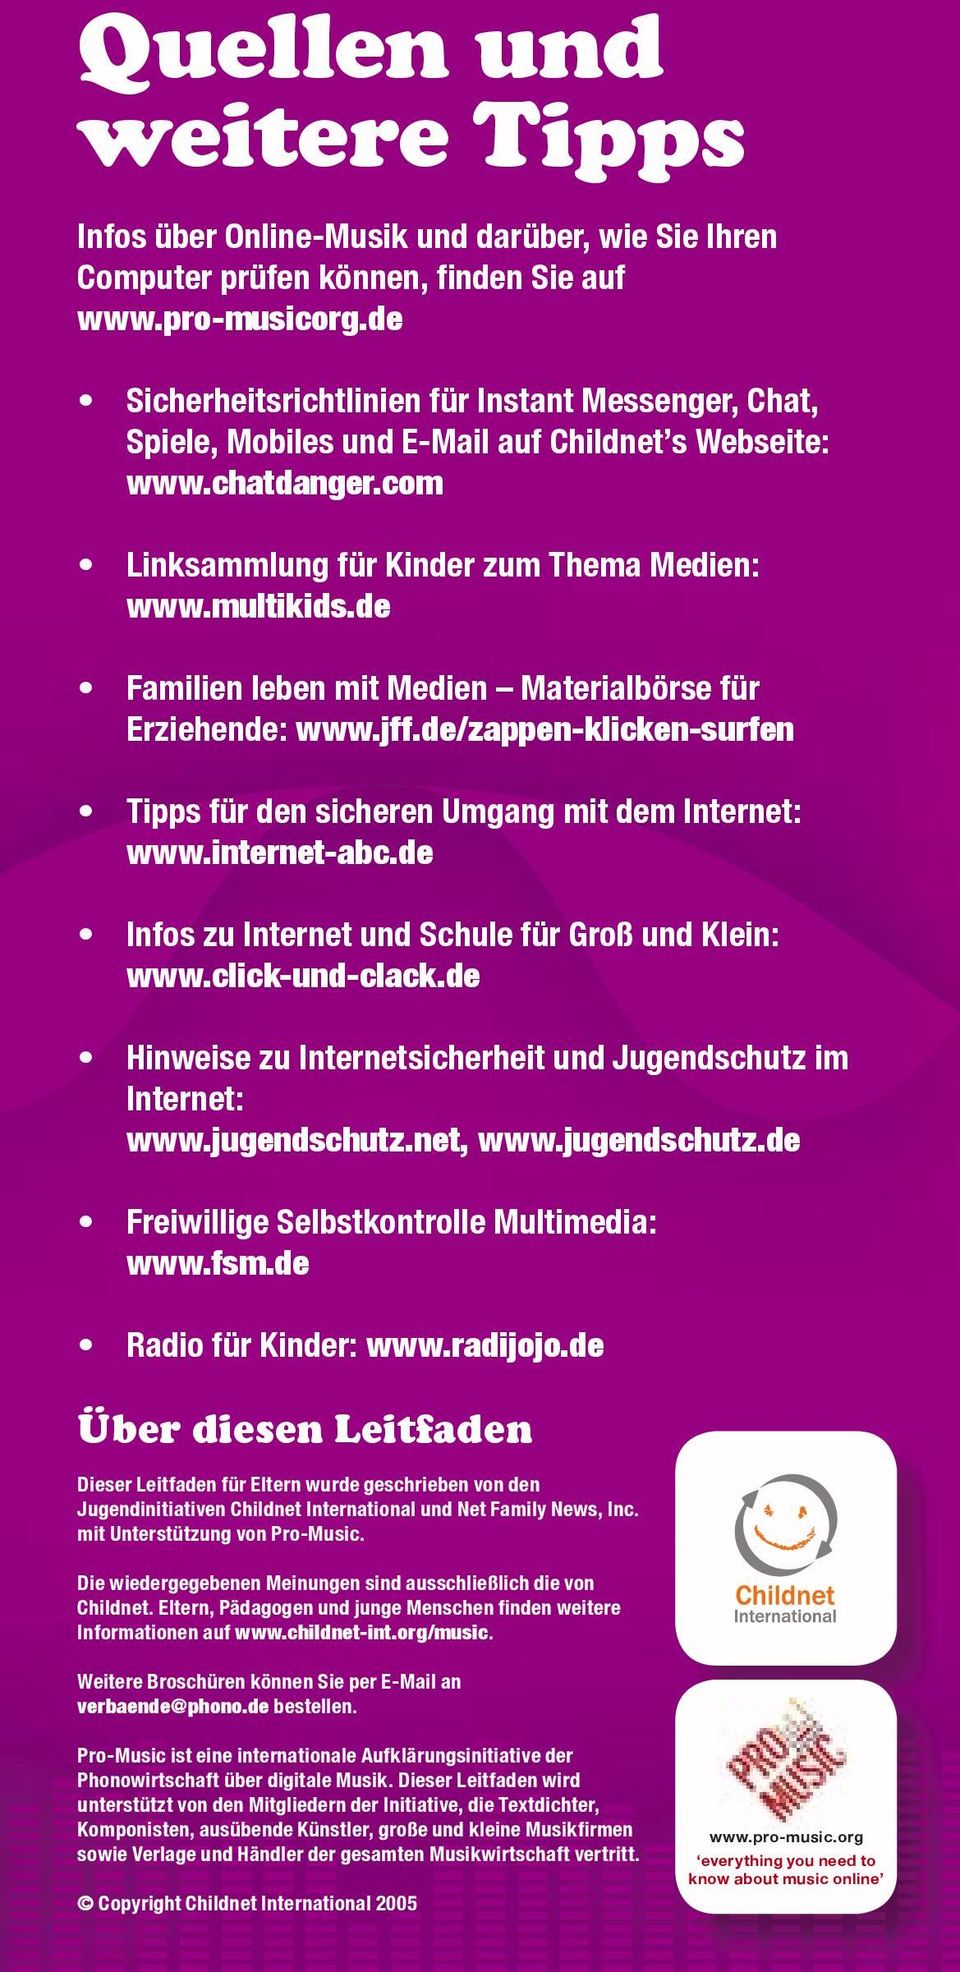 de Familien leben mit Medien Materialbörse für Erziehende: www.jff.de/zappen-klicken-surfen Tipps für den sicheren Umgang mit dem Internet: www.internet-abc.